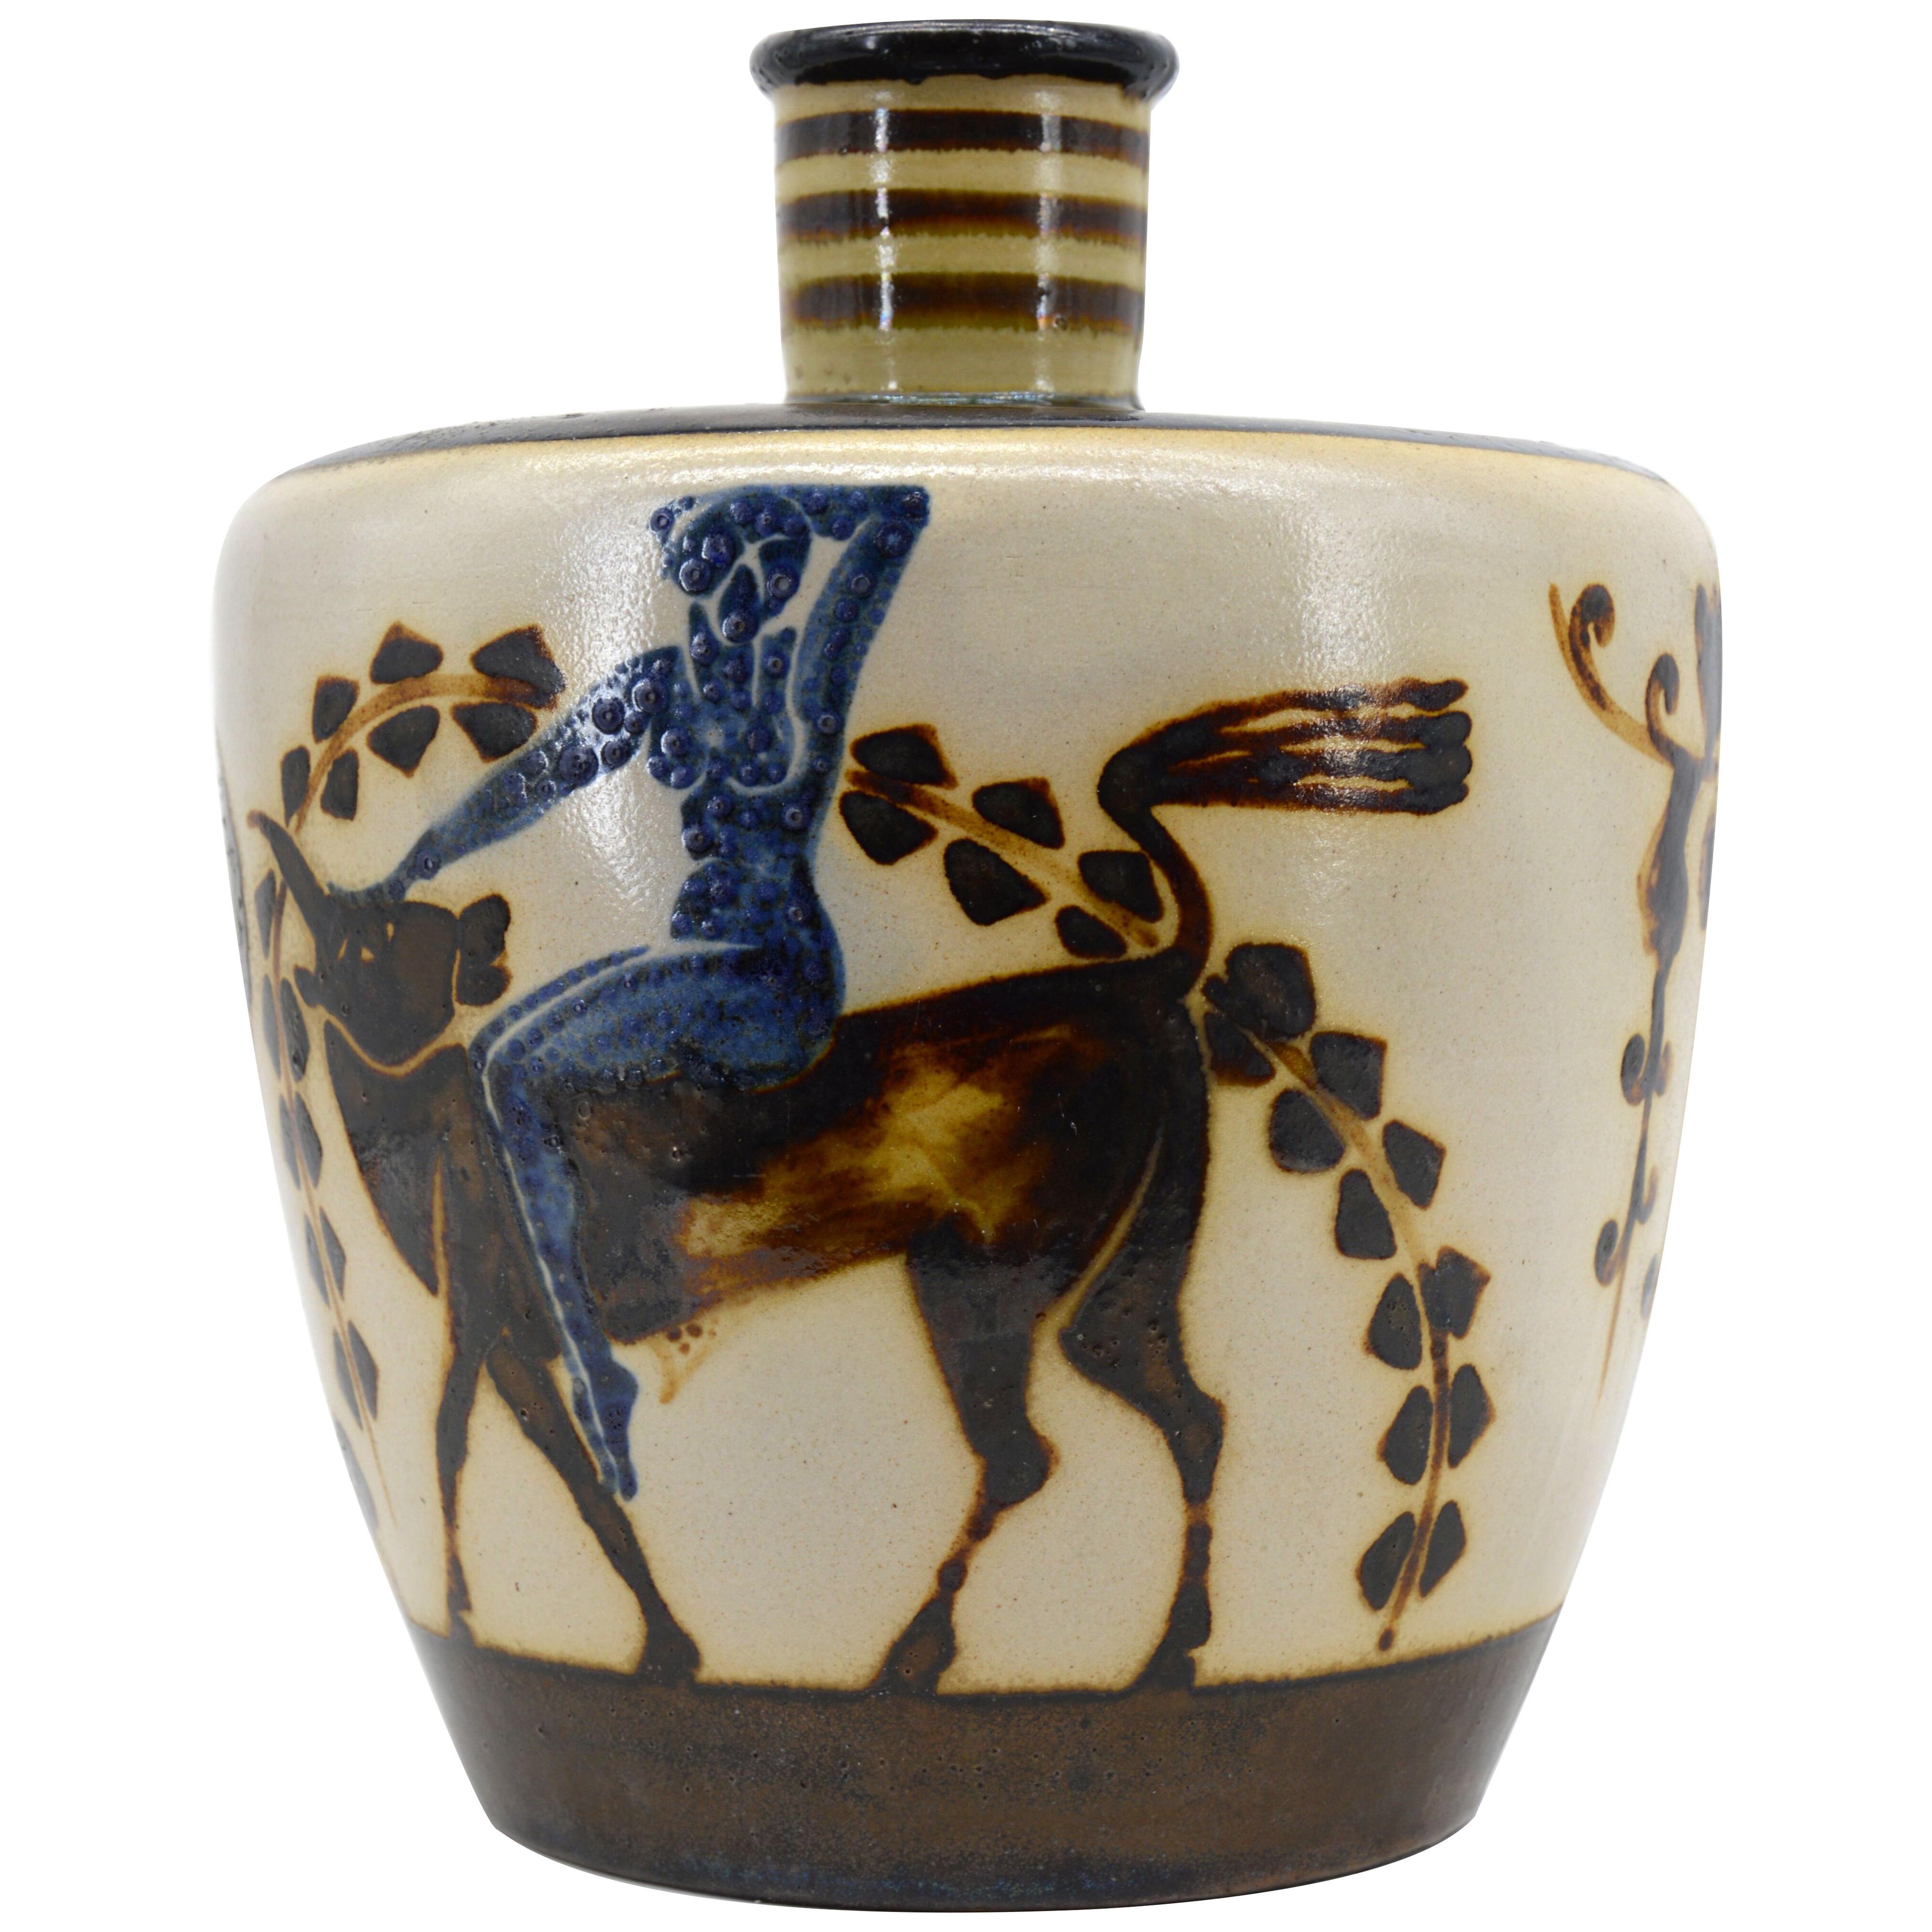 Rene Buthaud for Primavera Large Ceramic Vase, 1923-1926